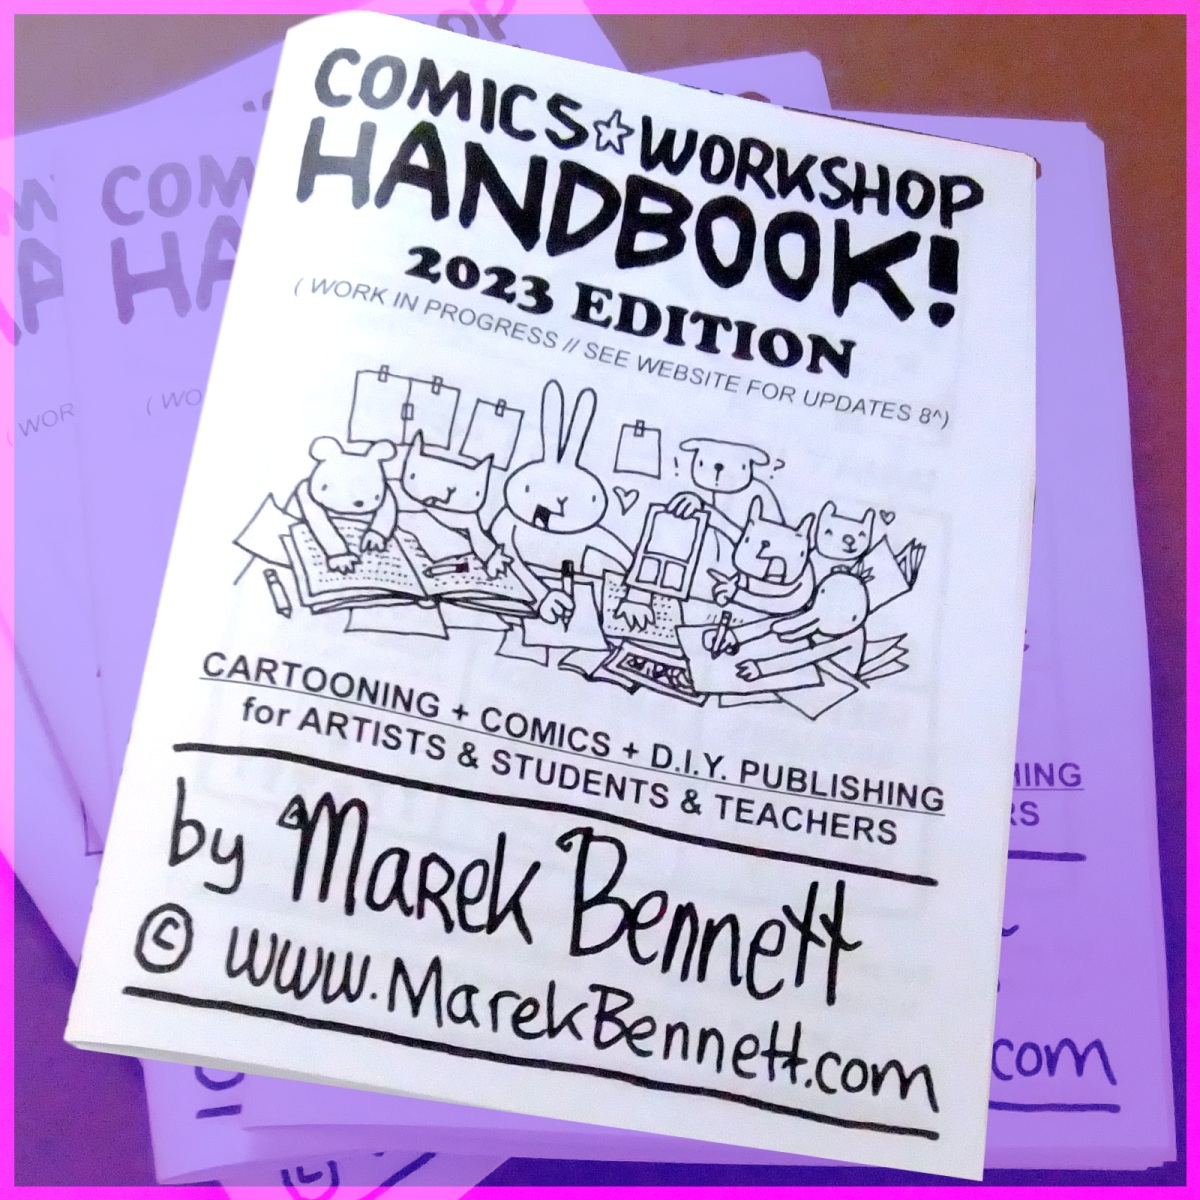 2023 Comics Workshop Handbook (Work In Progress)